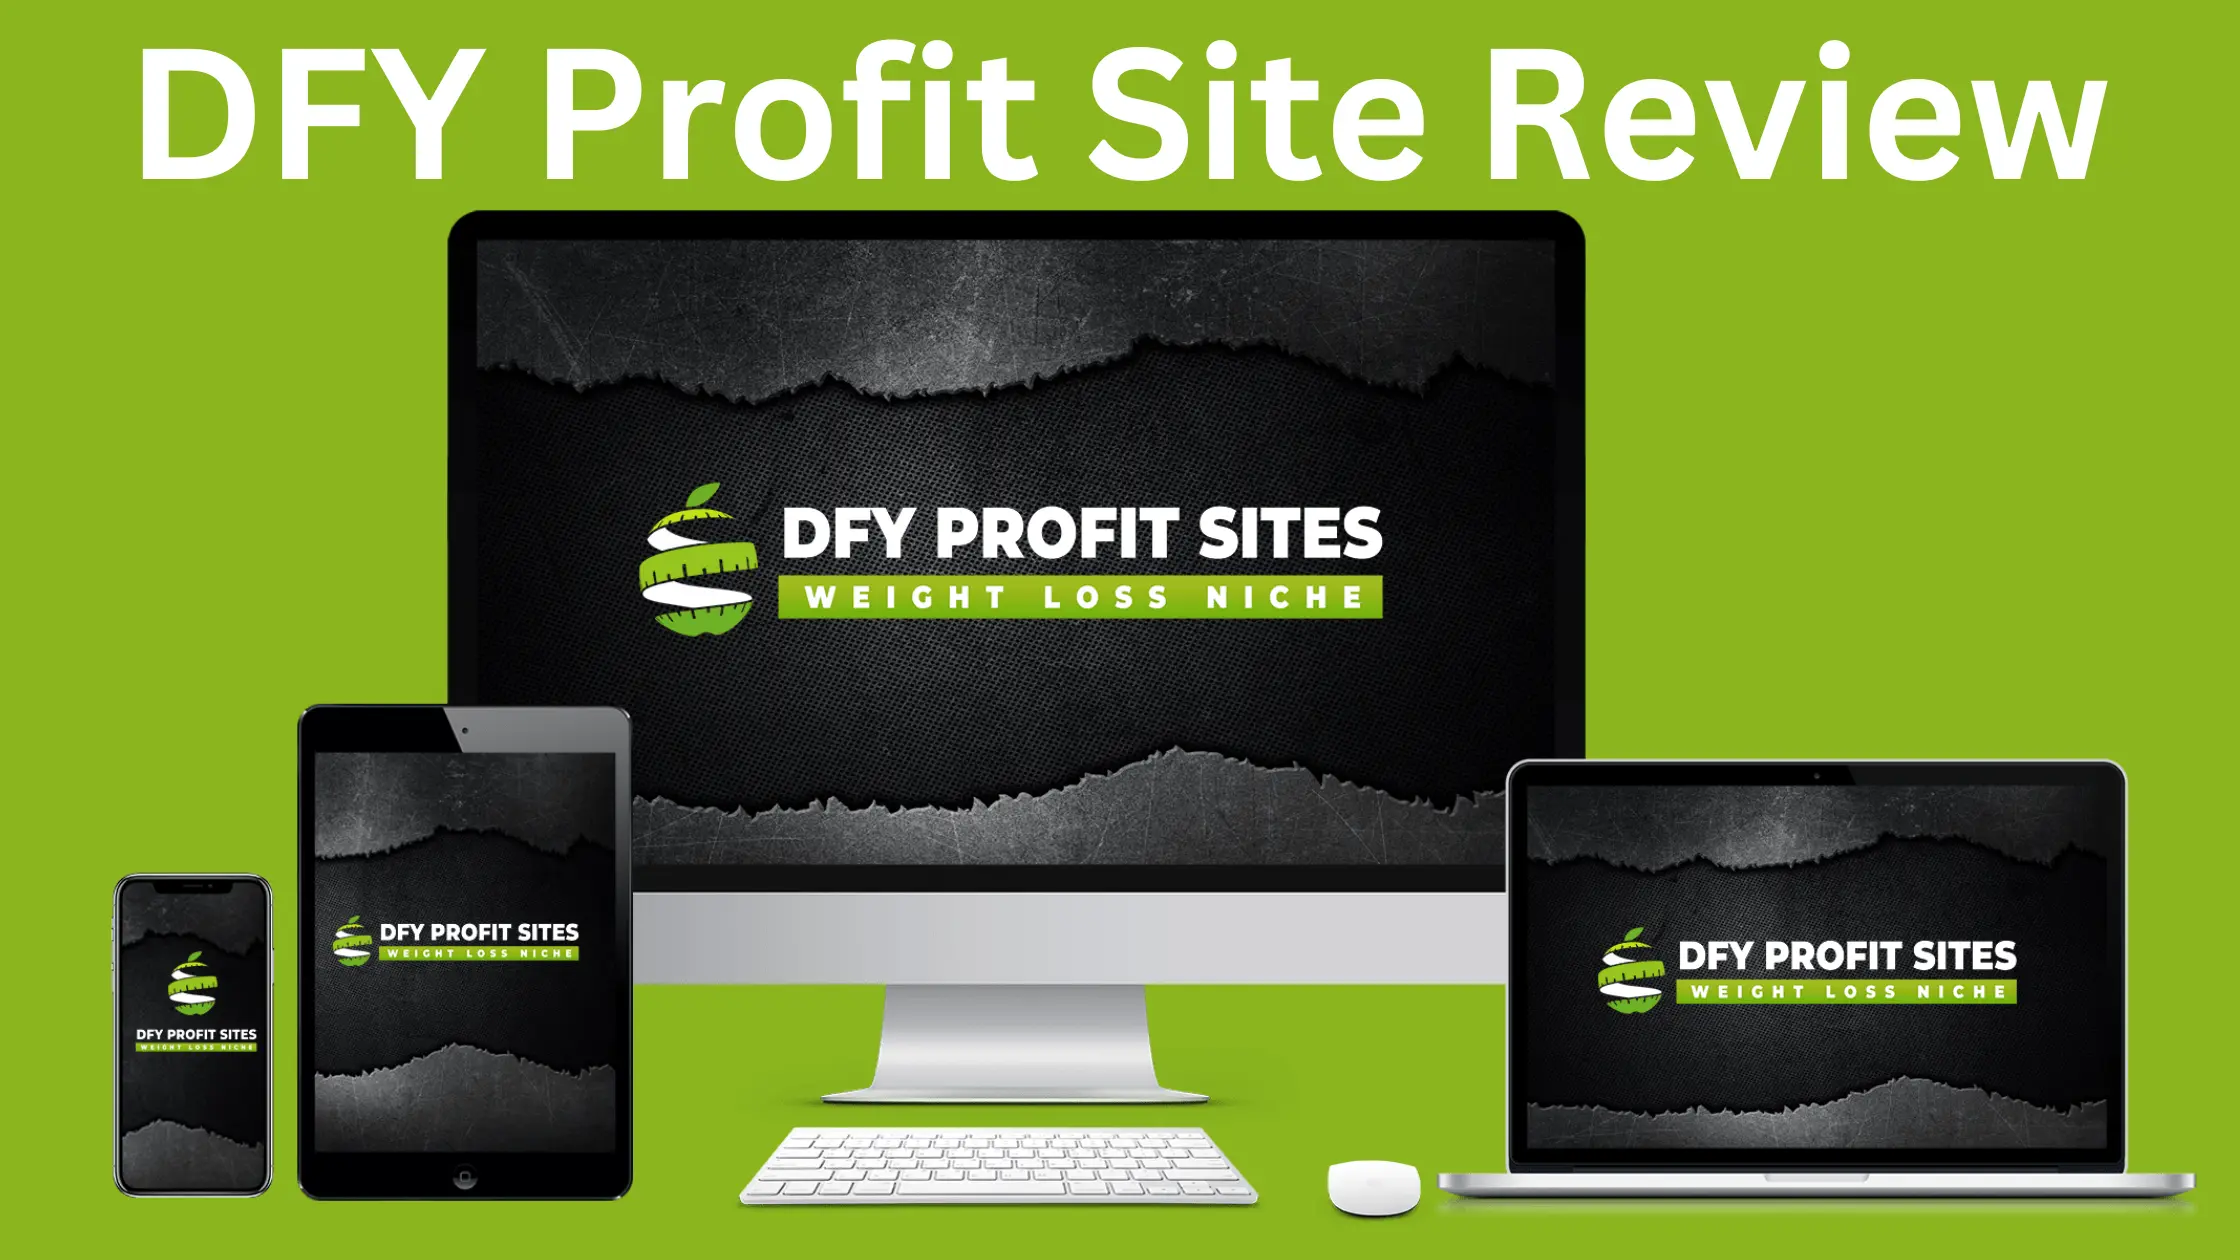 DFY Profit Site Review